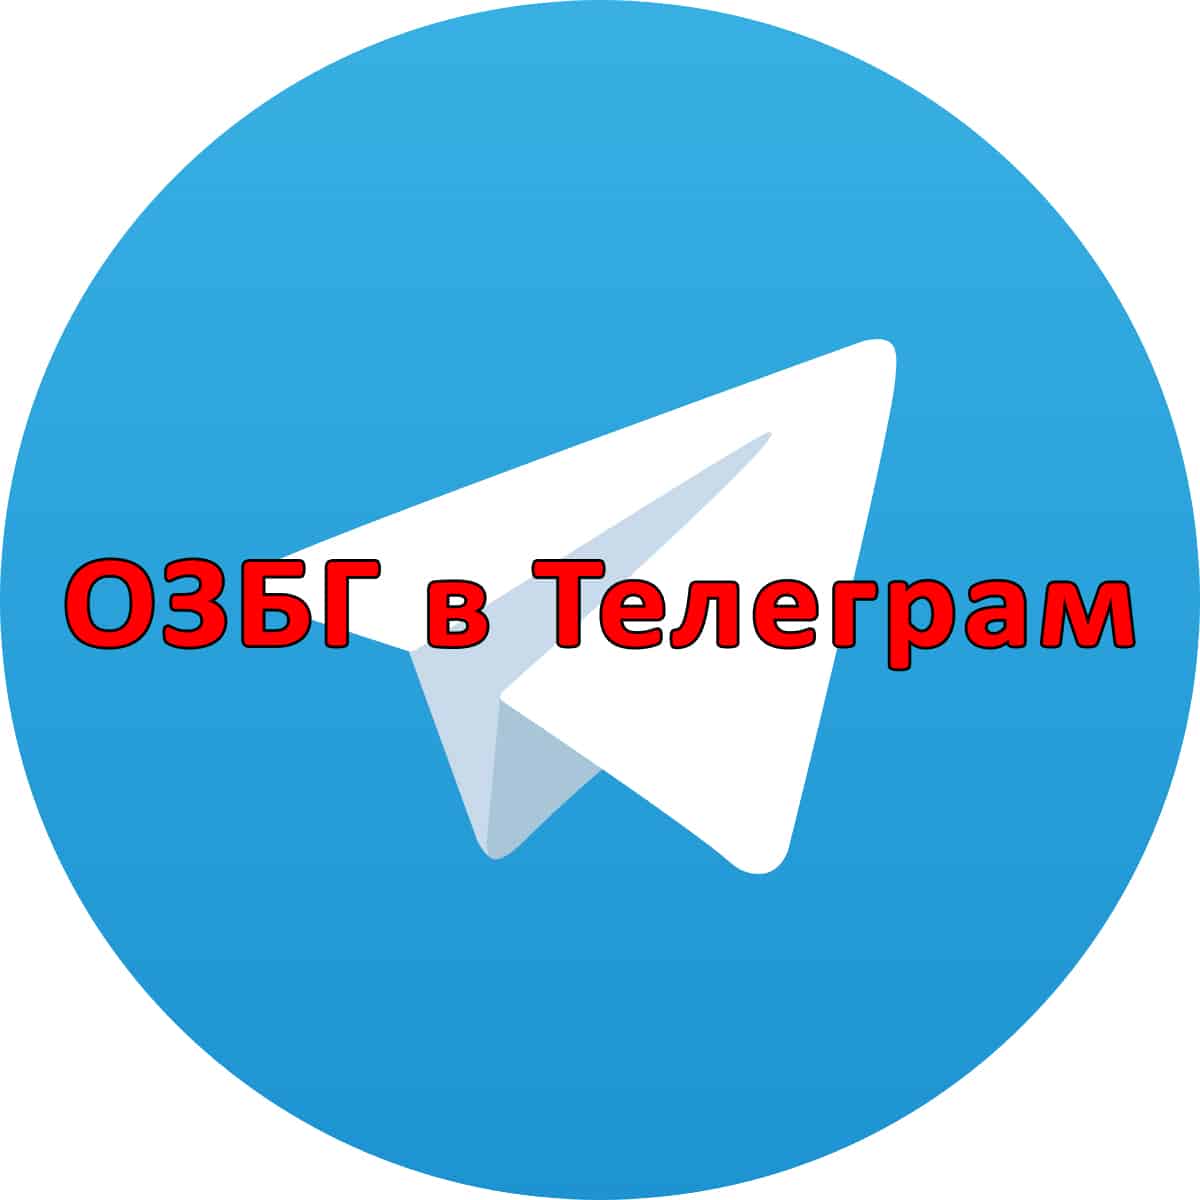 ОЗБГ вече има канал и в Телеграм, който е достъпен